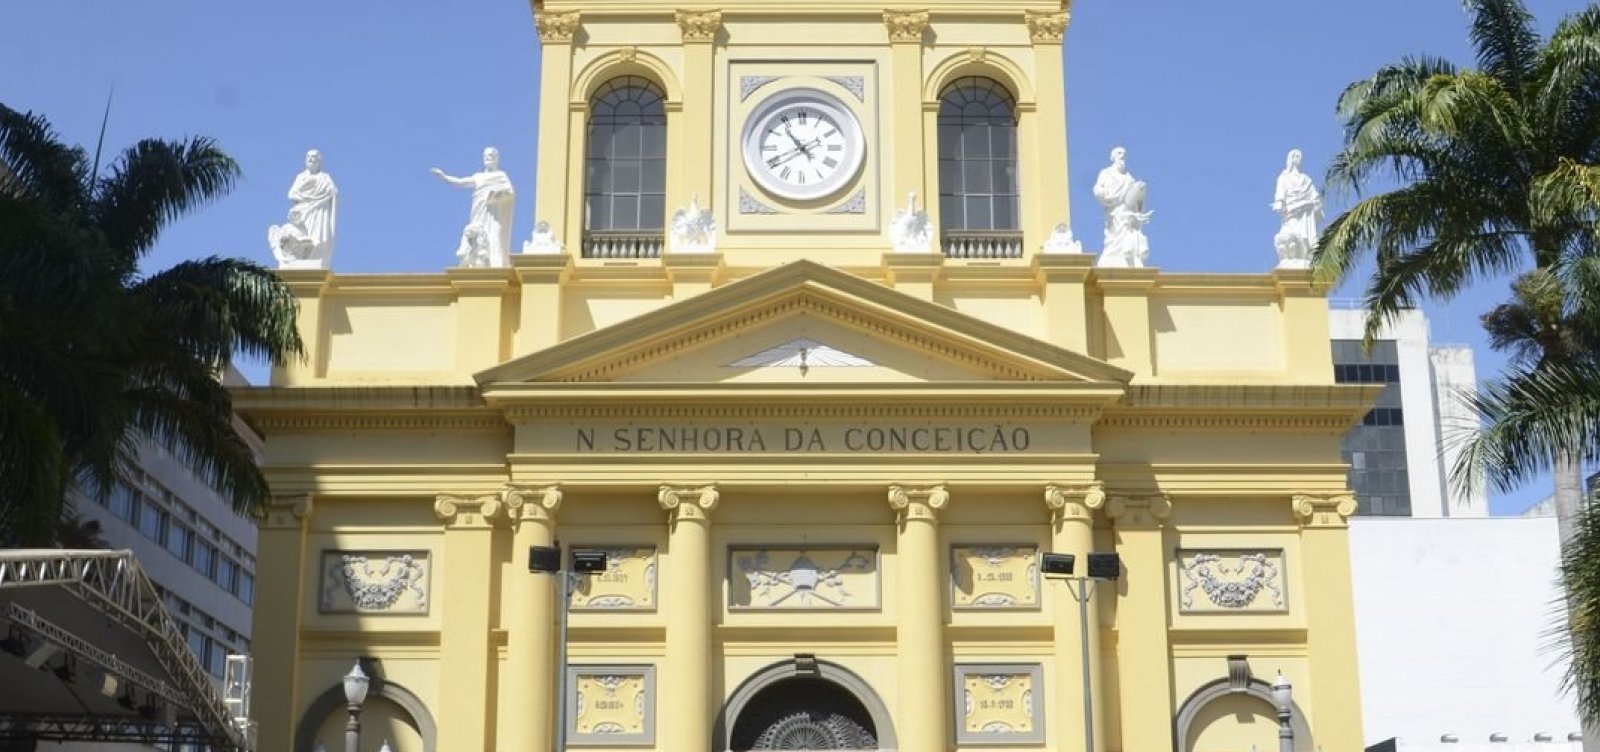 Atirador da catedral de Campinas escreveu em diário que precisava fazer ‘algo grande’